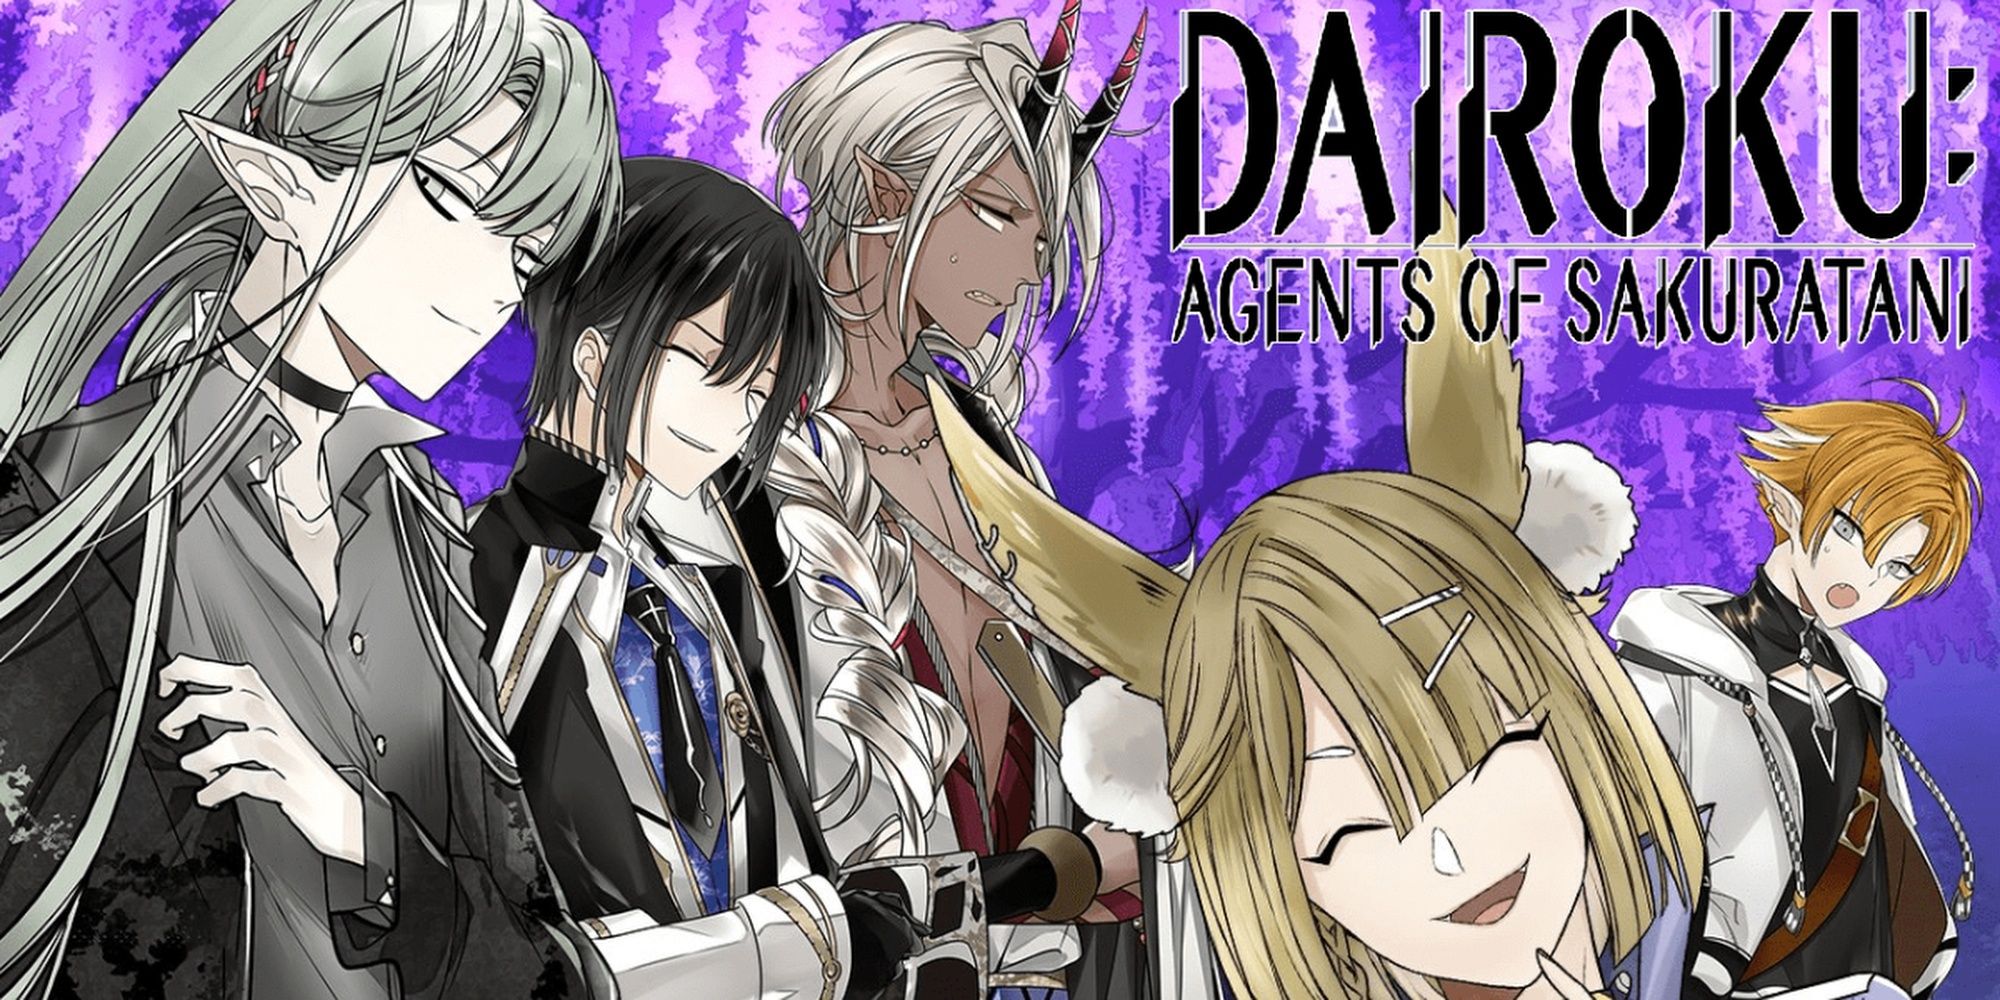 Dairoku Agents of Sakuratani title image